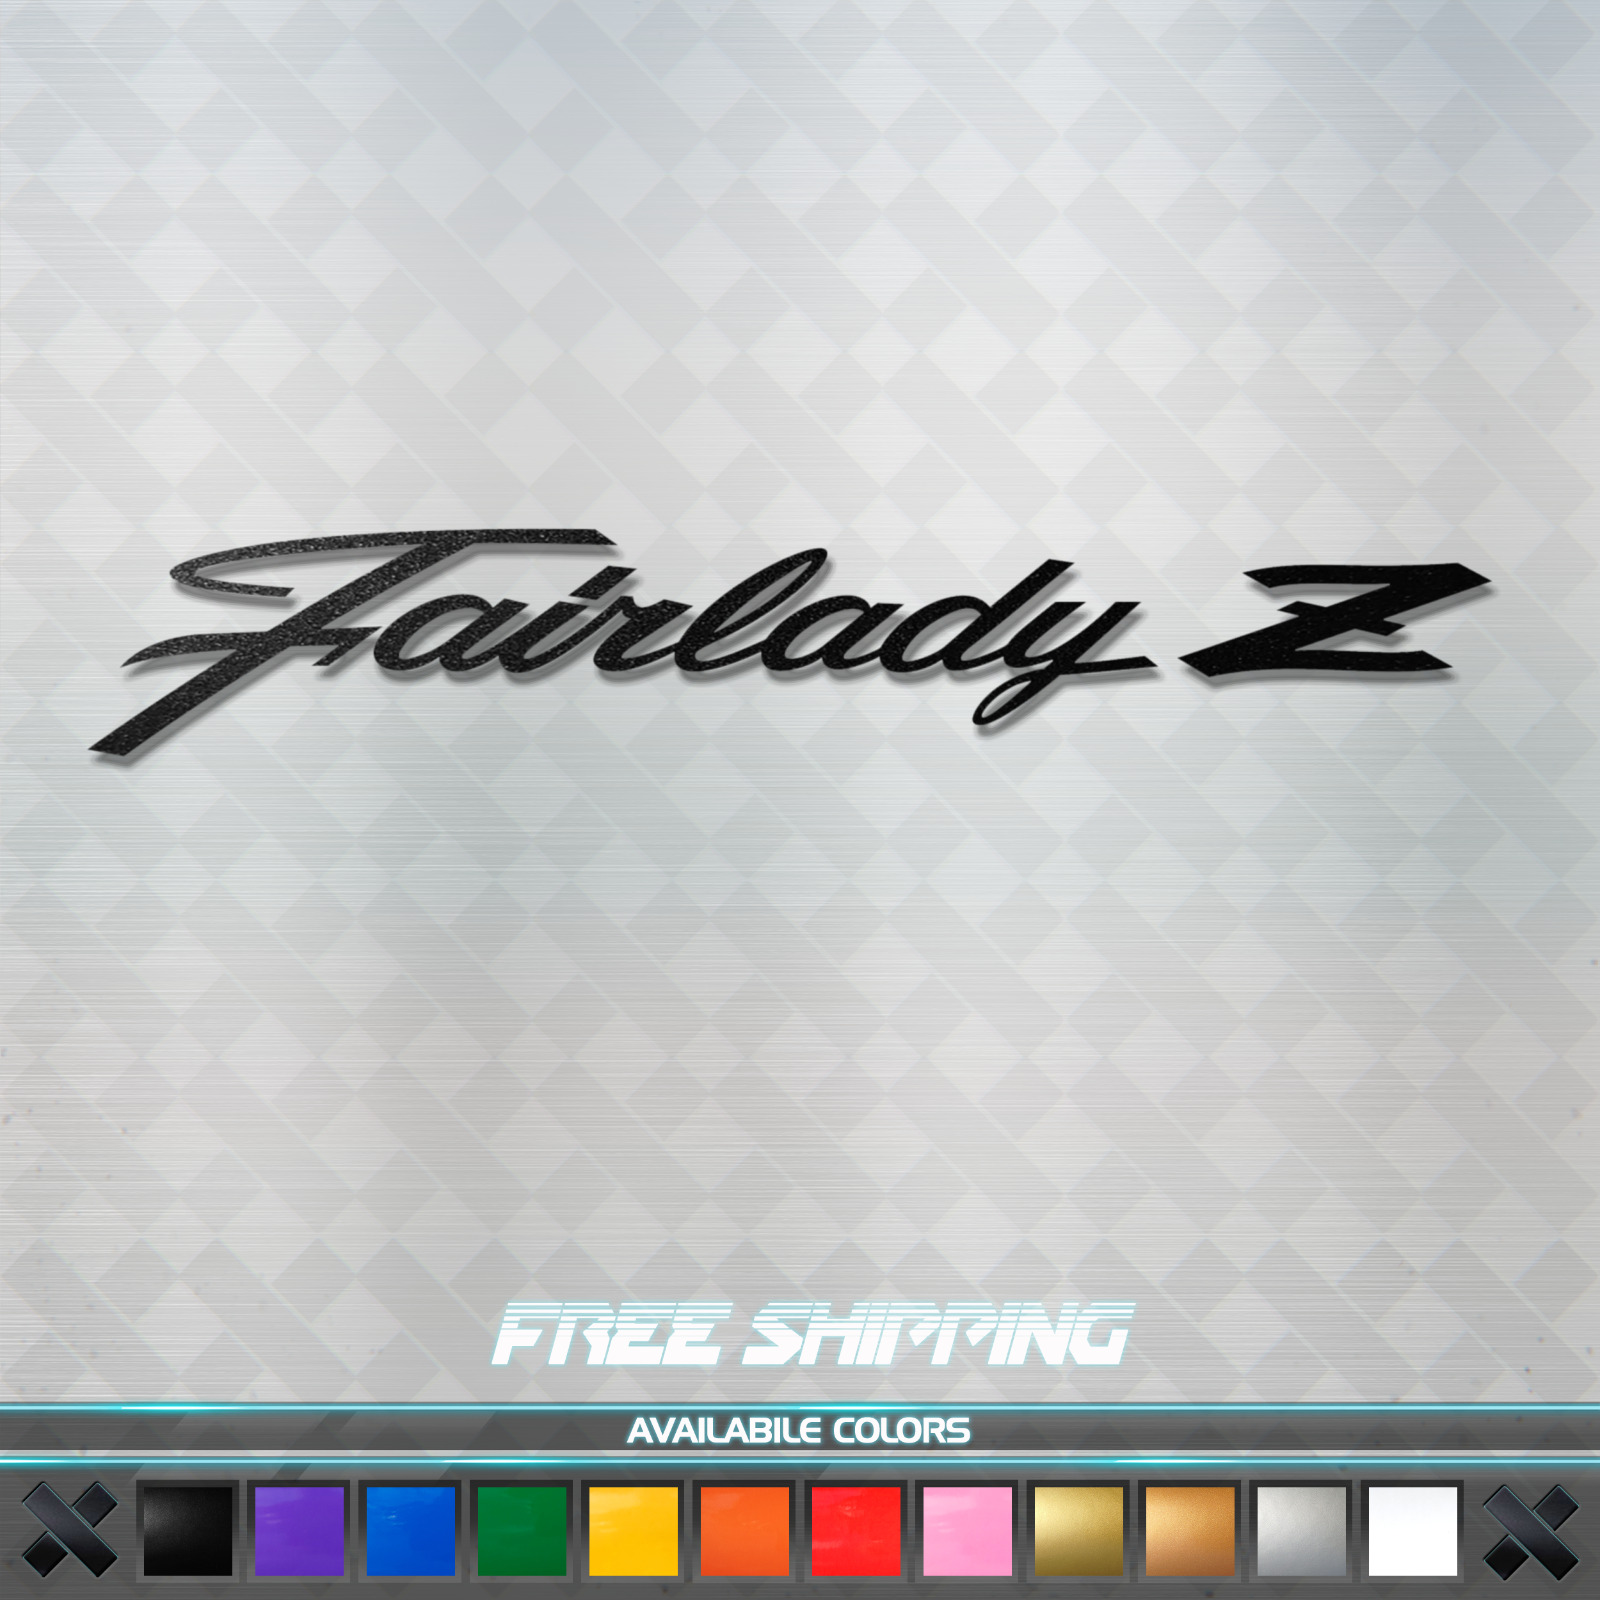 Fairlady Z Script Vinyl Decal Sticker - JDM Car Window 370z 350z 300zx 240z S30